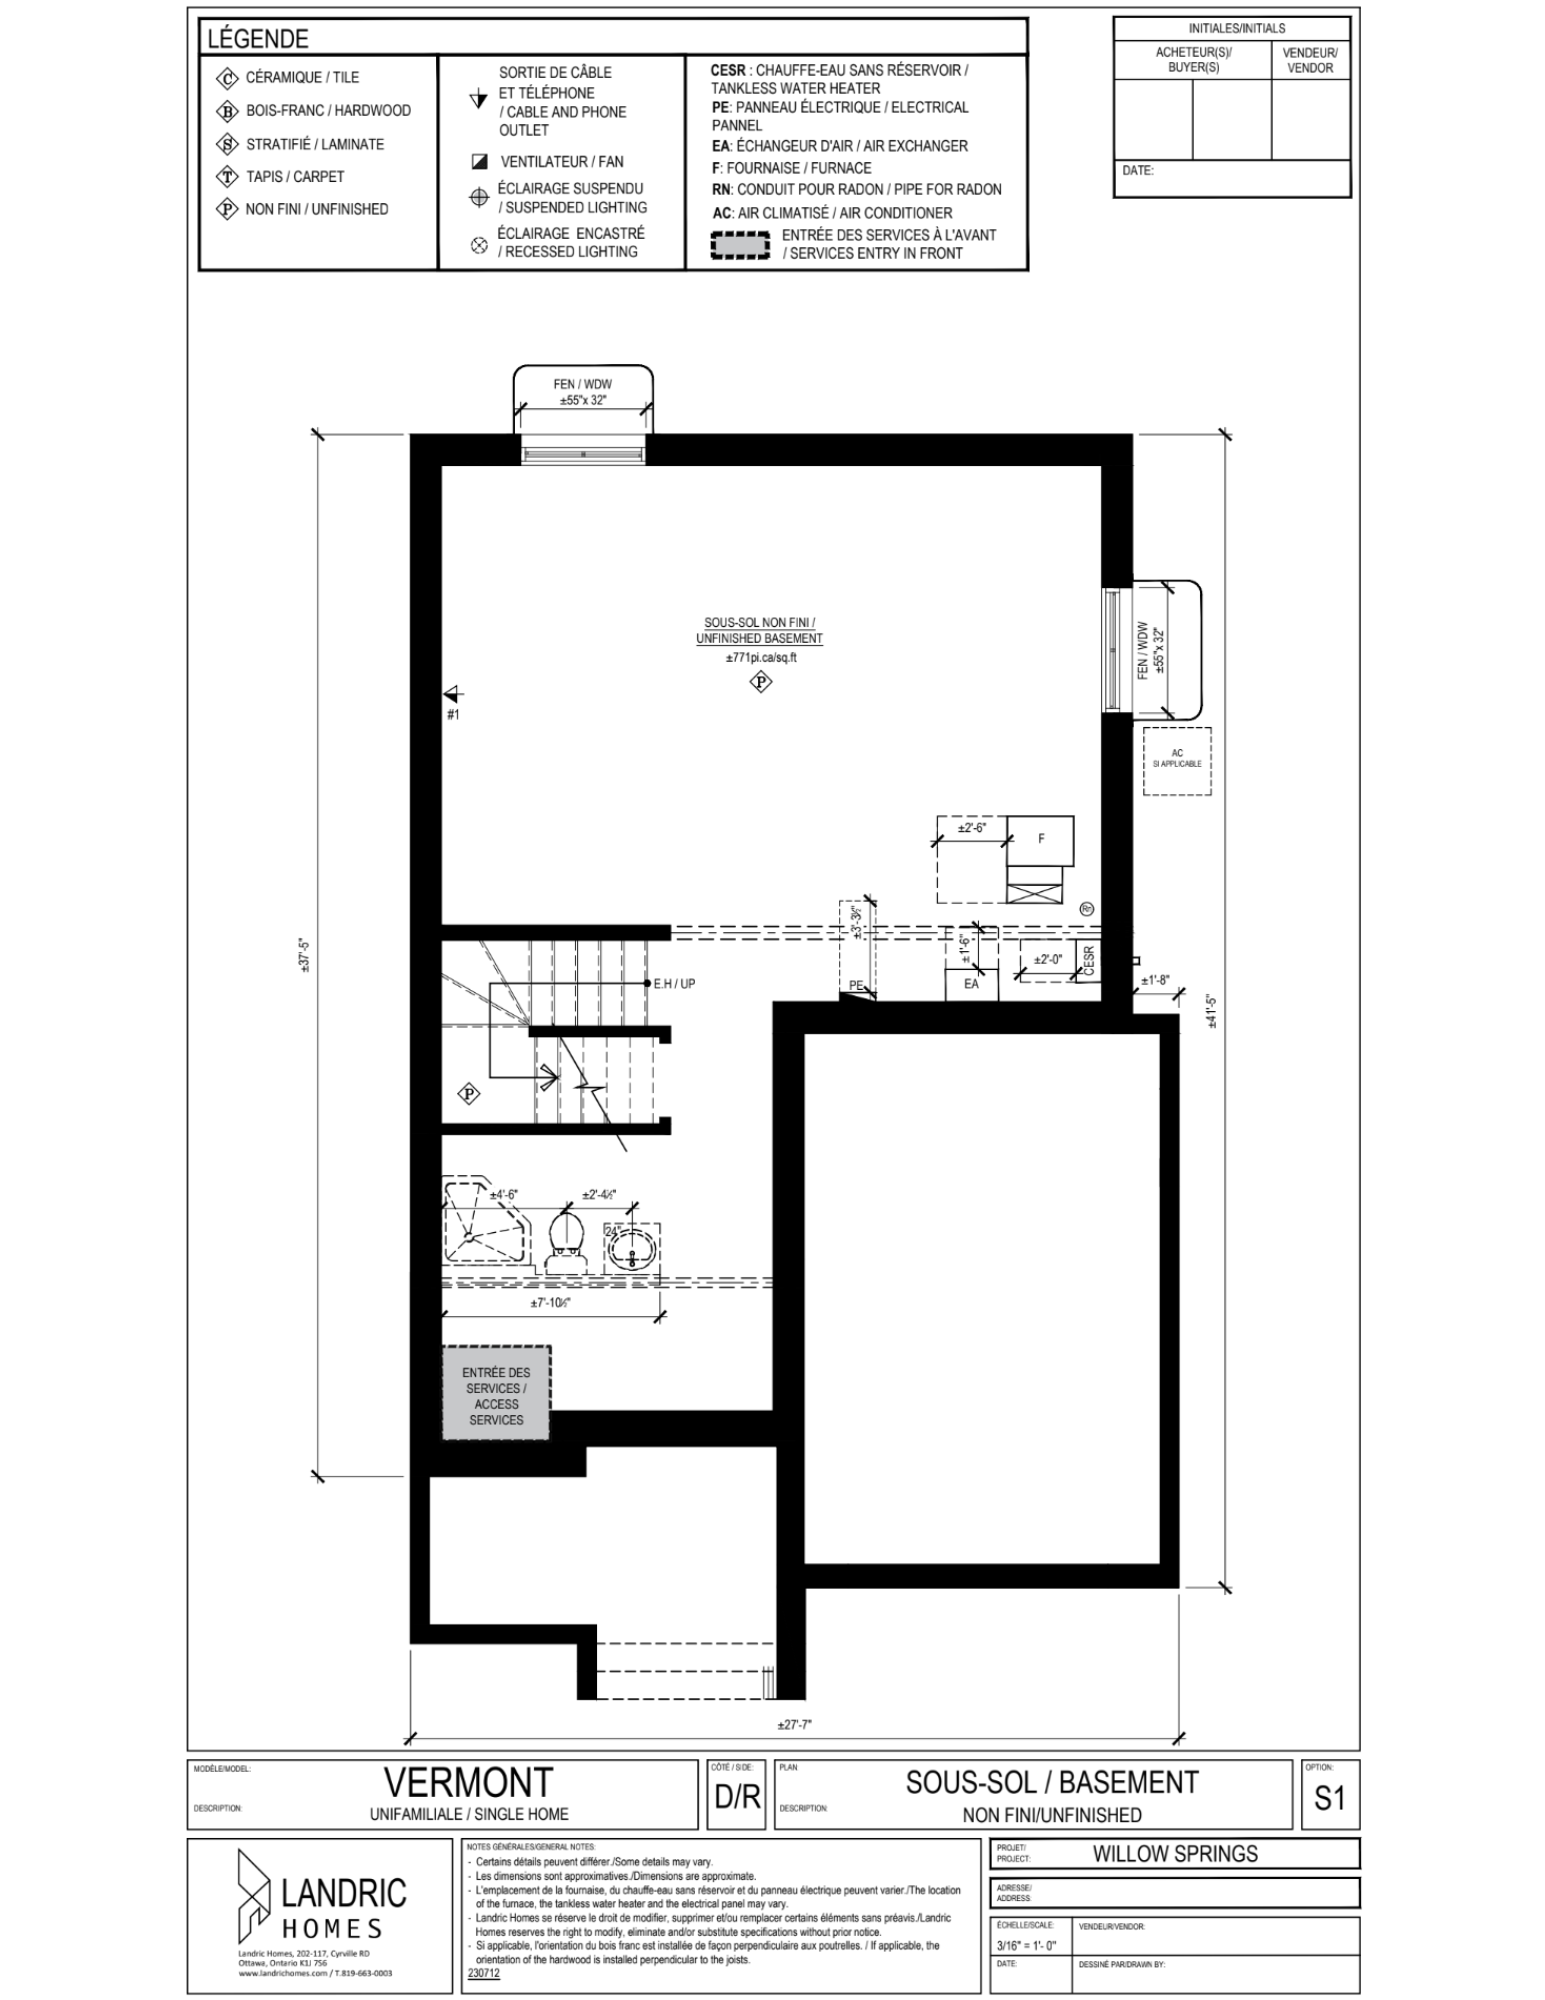 Willow Springs, Limoges floor plans (24)